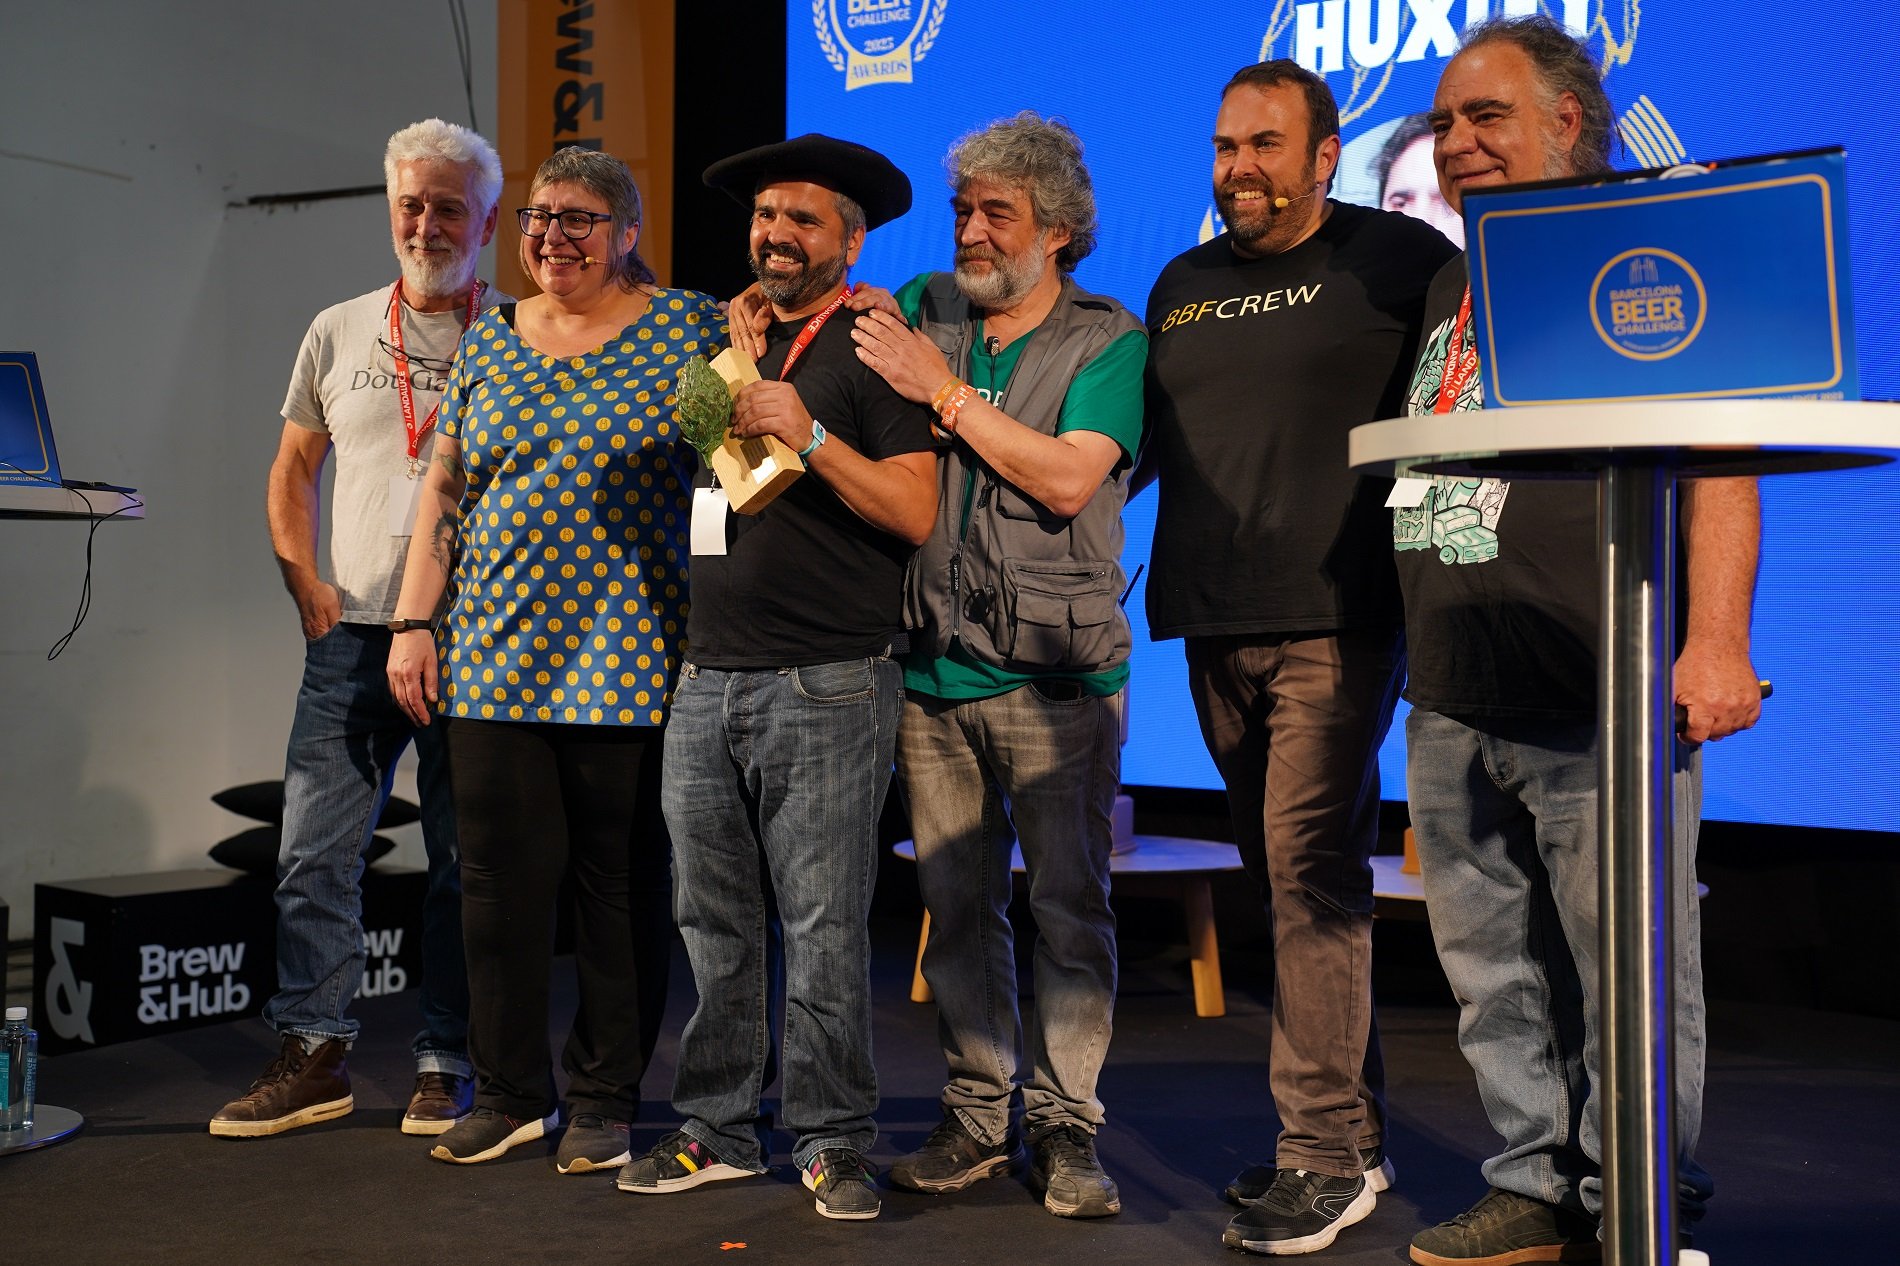 Un català guanya un premi internacional per la seva carrera professional cervesera